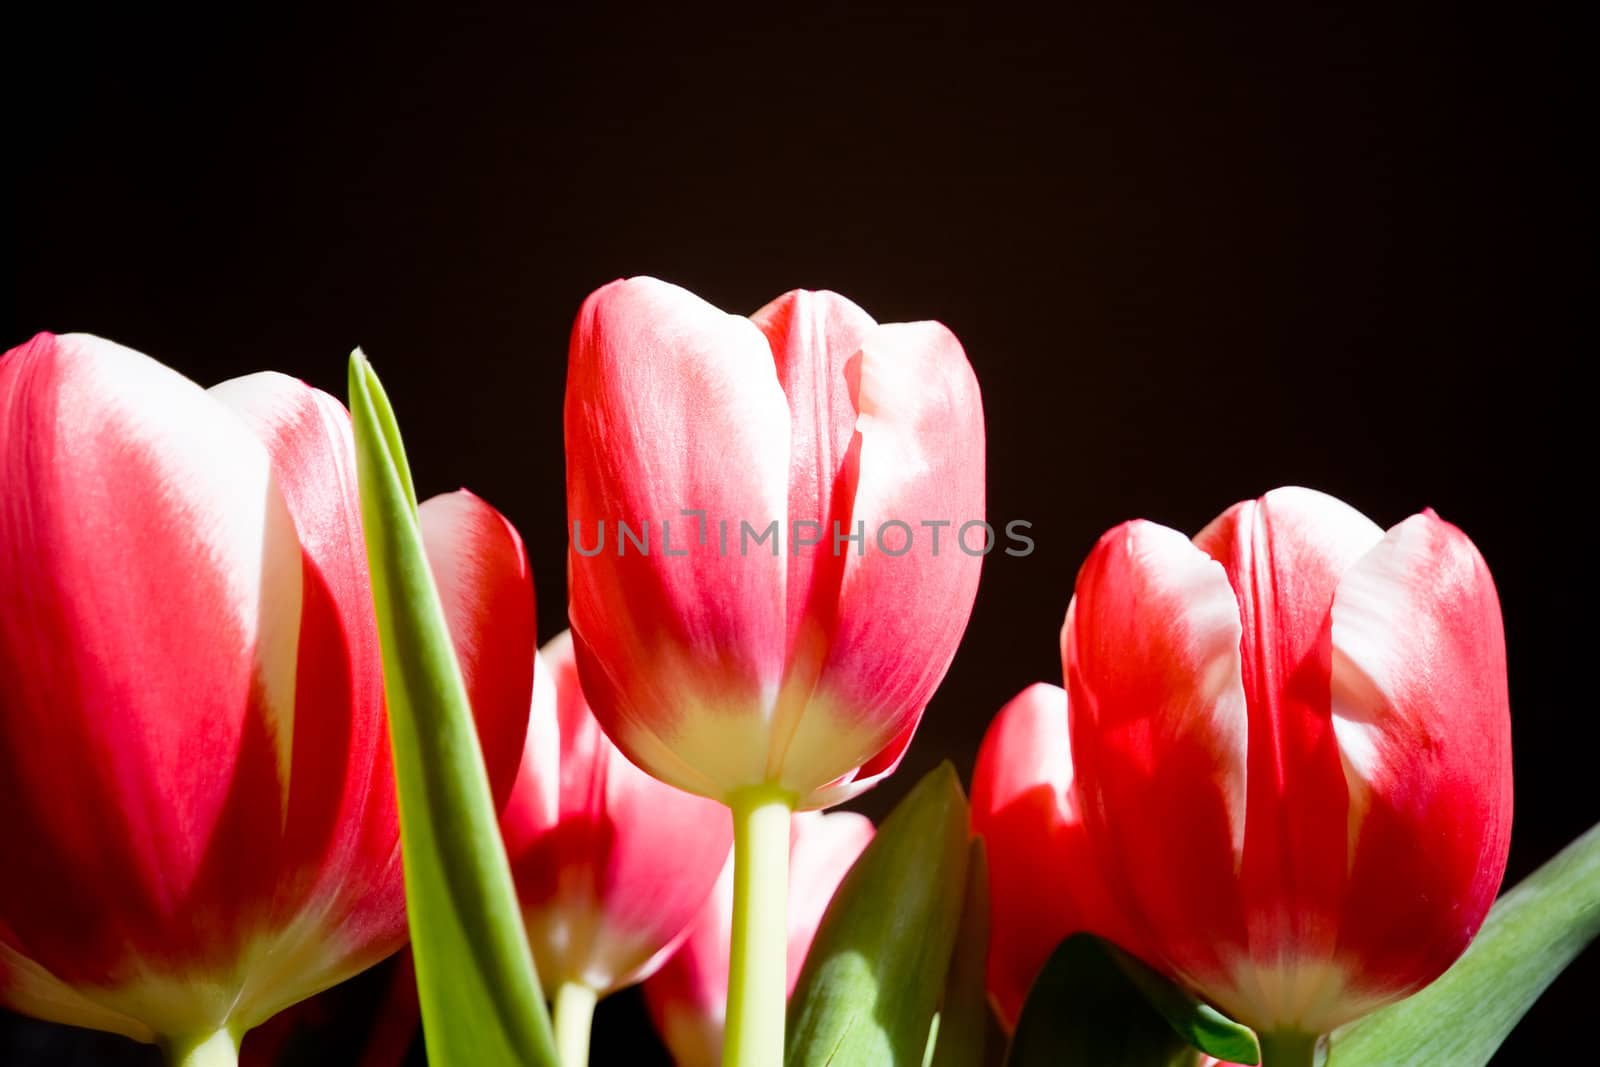 tulips on black background